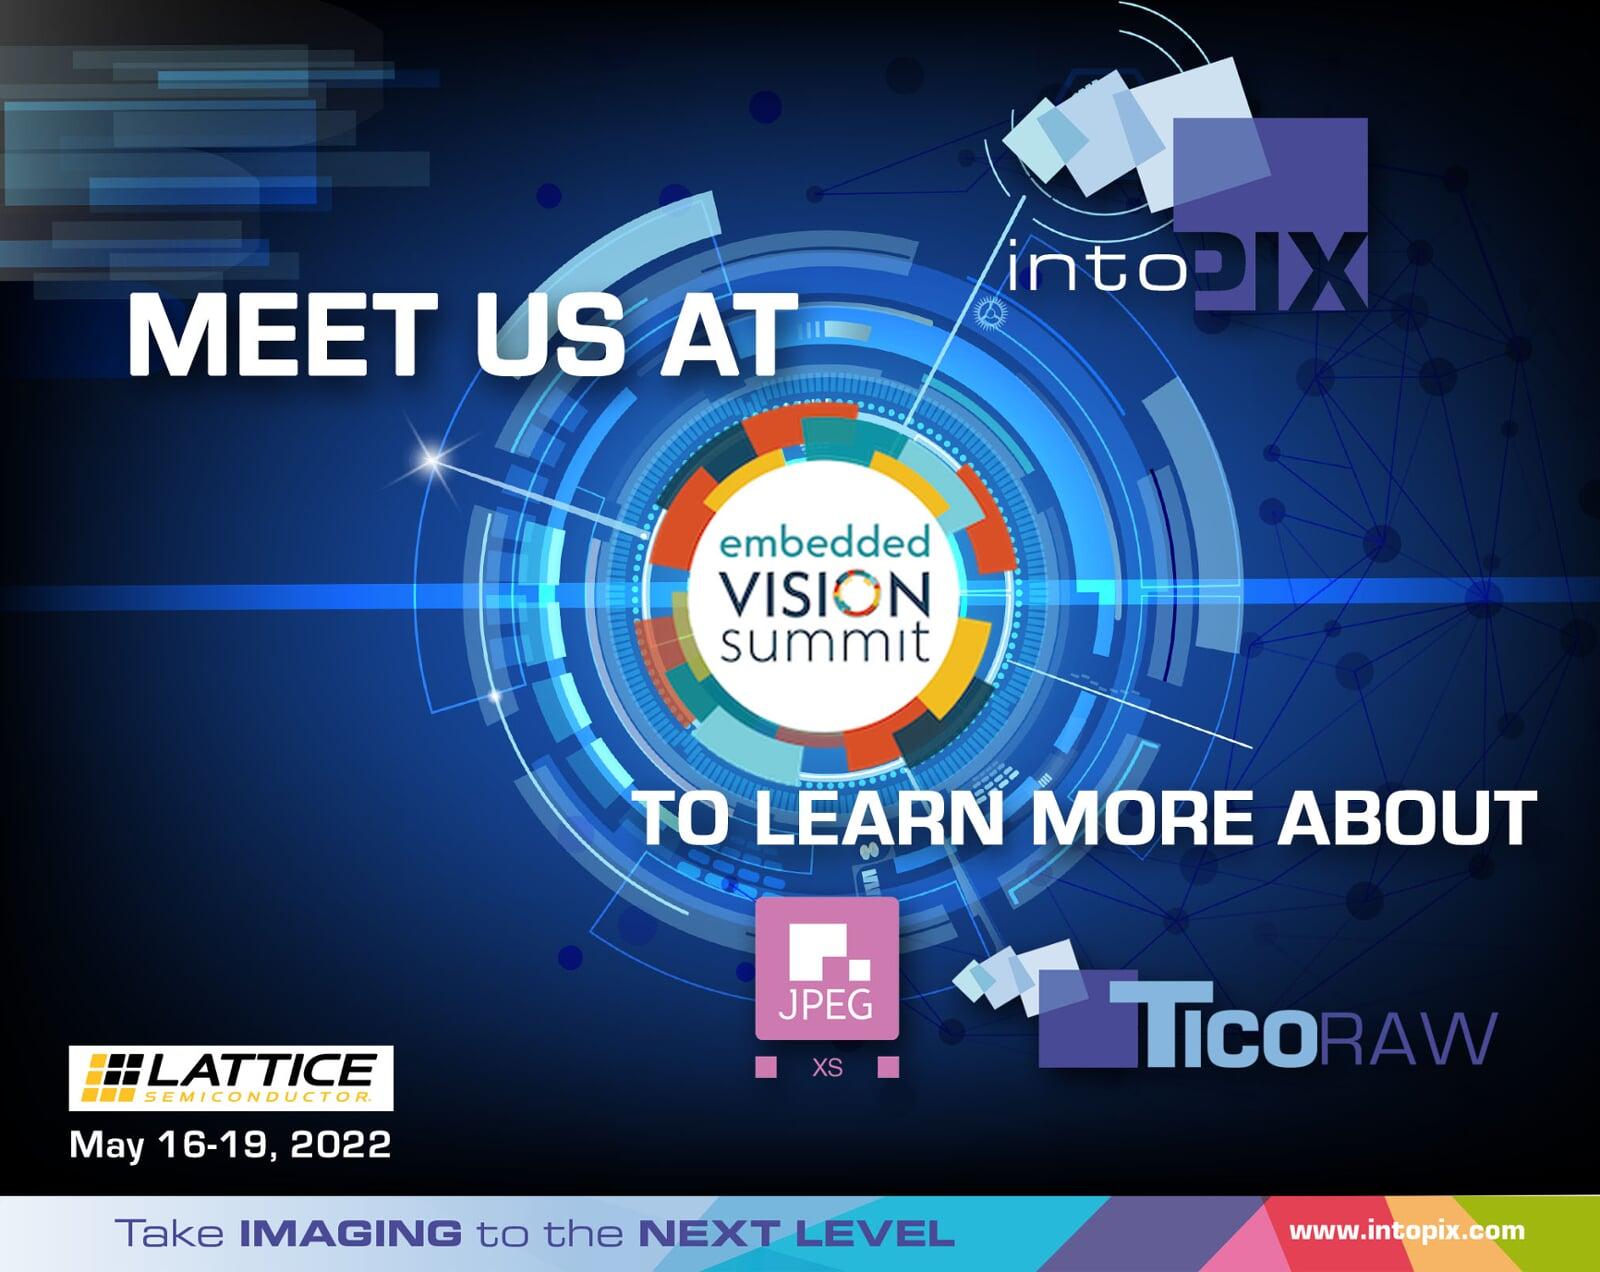 intoPIX présentera sa compression légère IP à l'Embedded Vision Summit 2022 sur le stand de Lattice